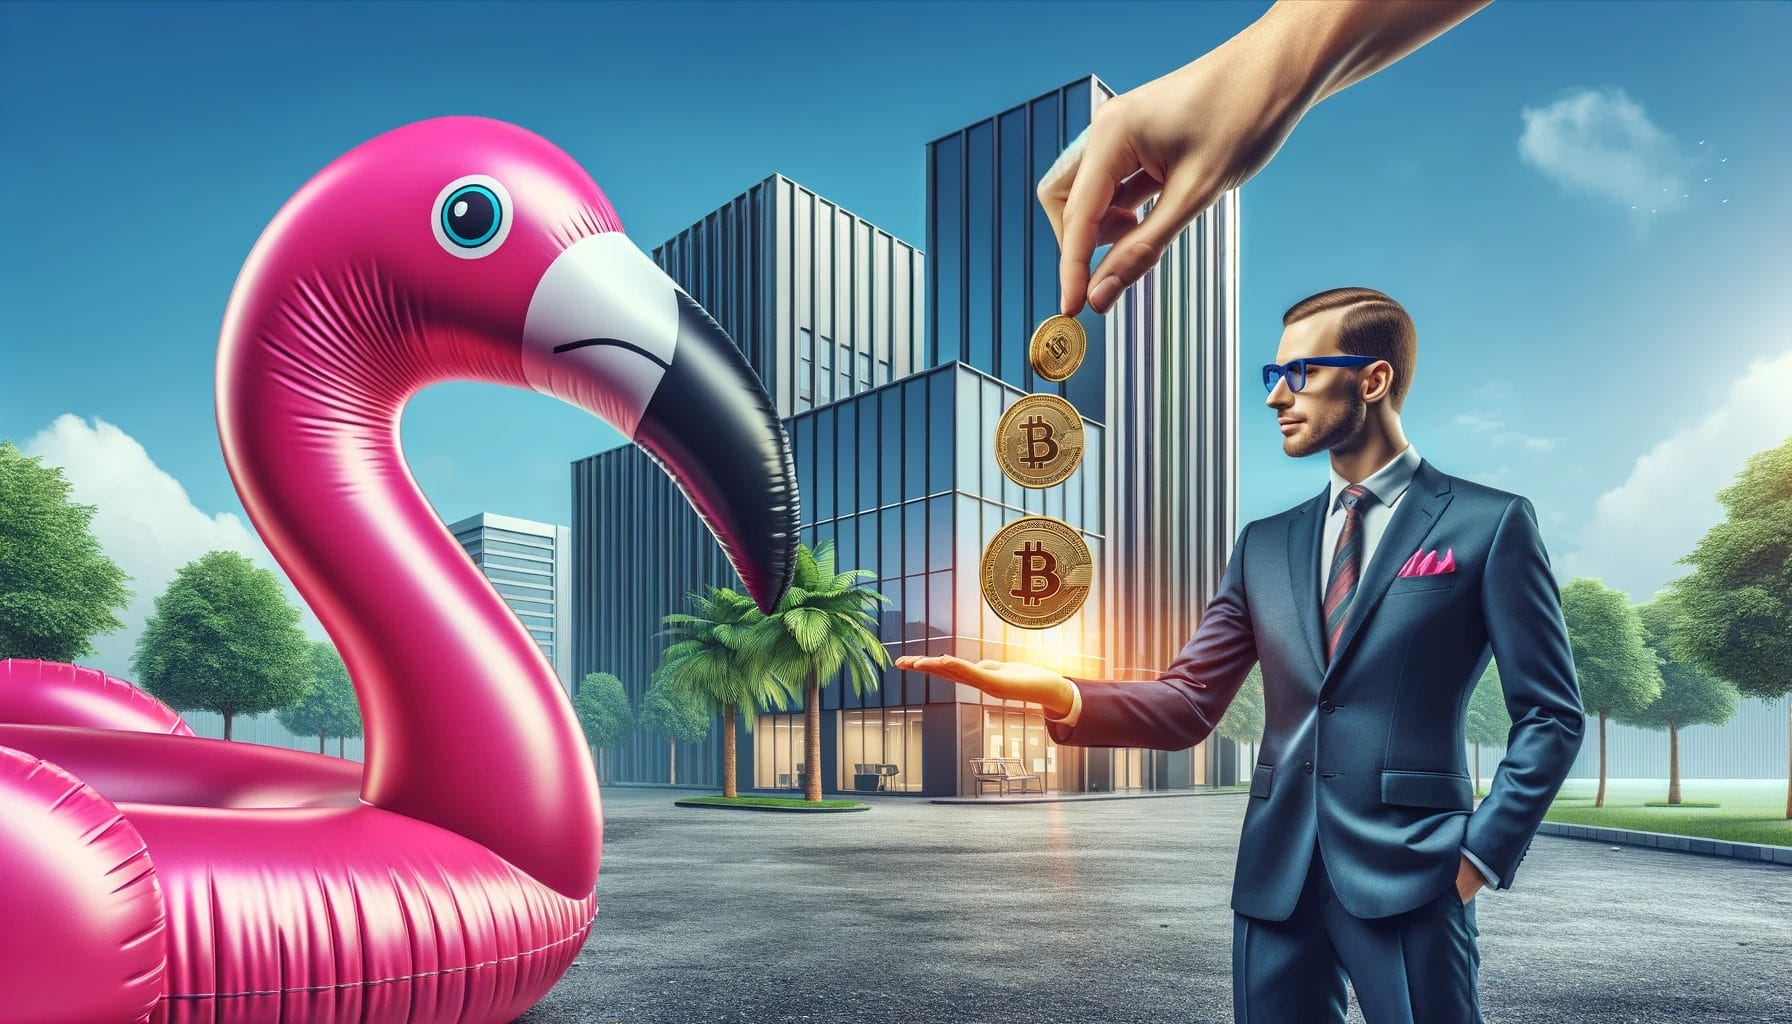 Lebendige und fotorealistische Szene mit einem aufblasbaren pinken Flamingo, der mit dem Schnabel einem Banker eine Münze in die Hand fallen lässt, um Gebühren zu bezahlen. Im Hintergrund sind realistische Bürogebäude, die Finanzinstitutionen repräsentieren. Die Atmosphäre ist lebendig, professionell und ansprechend und hebt das Konzept der Gebühren bei finanziellen Transaktionen hervor.